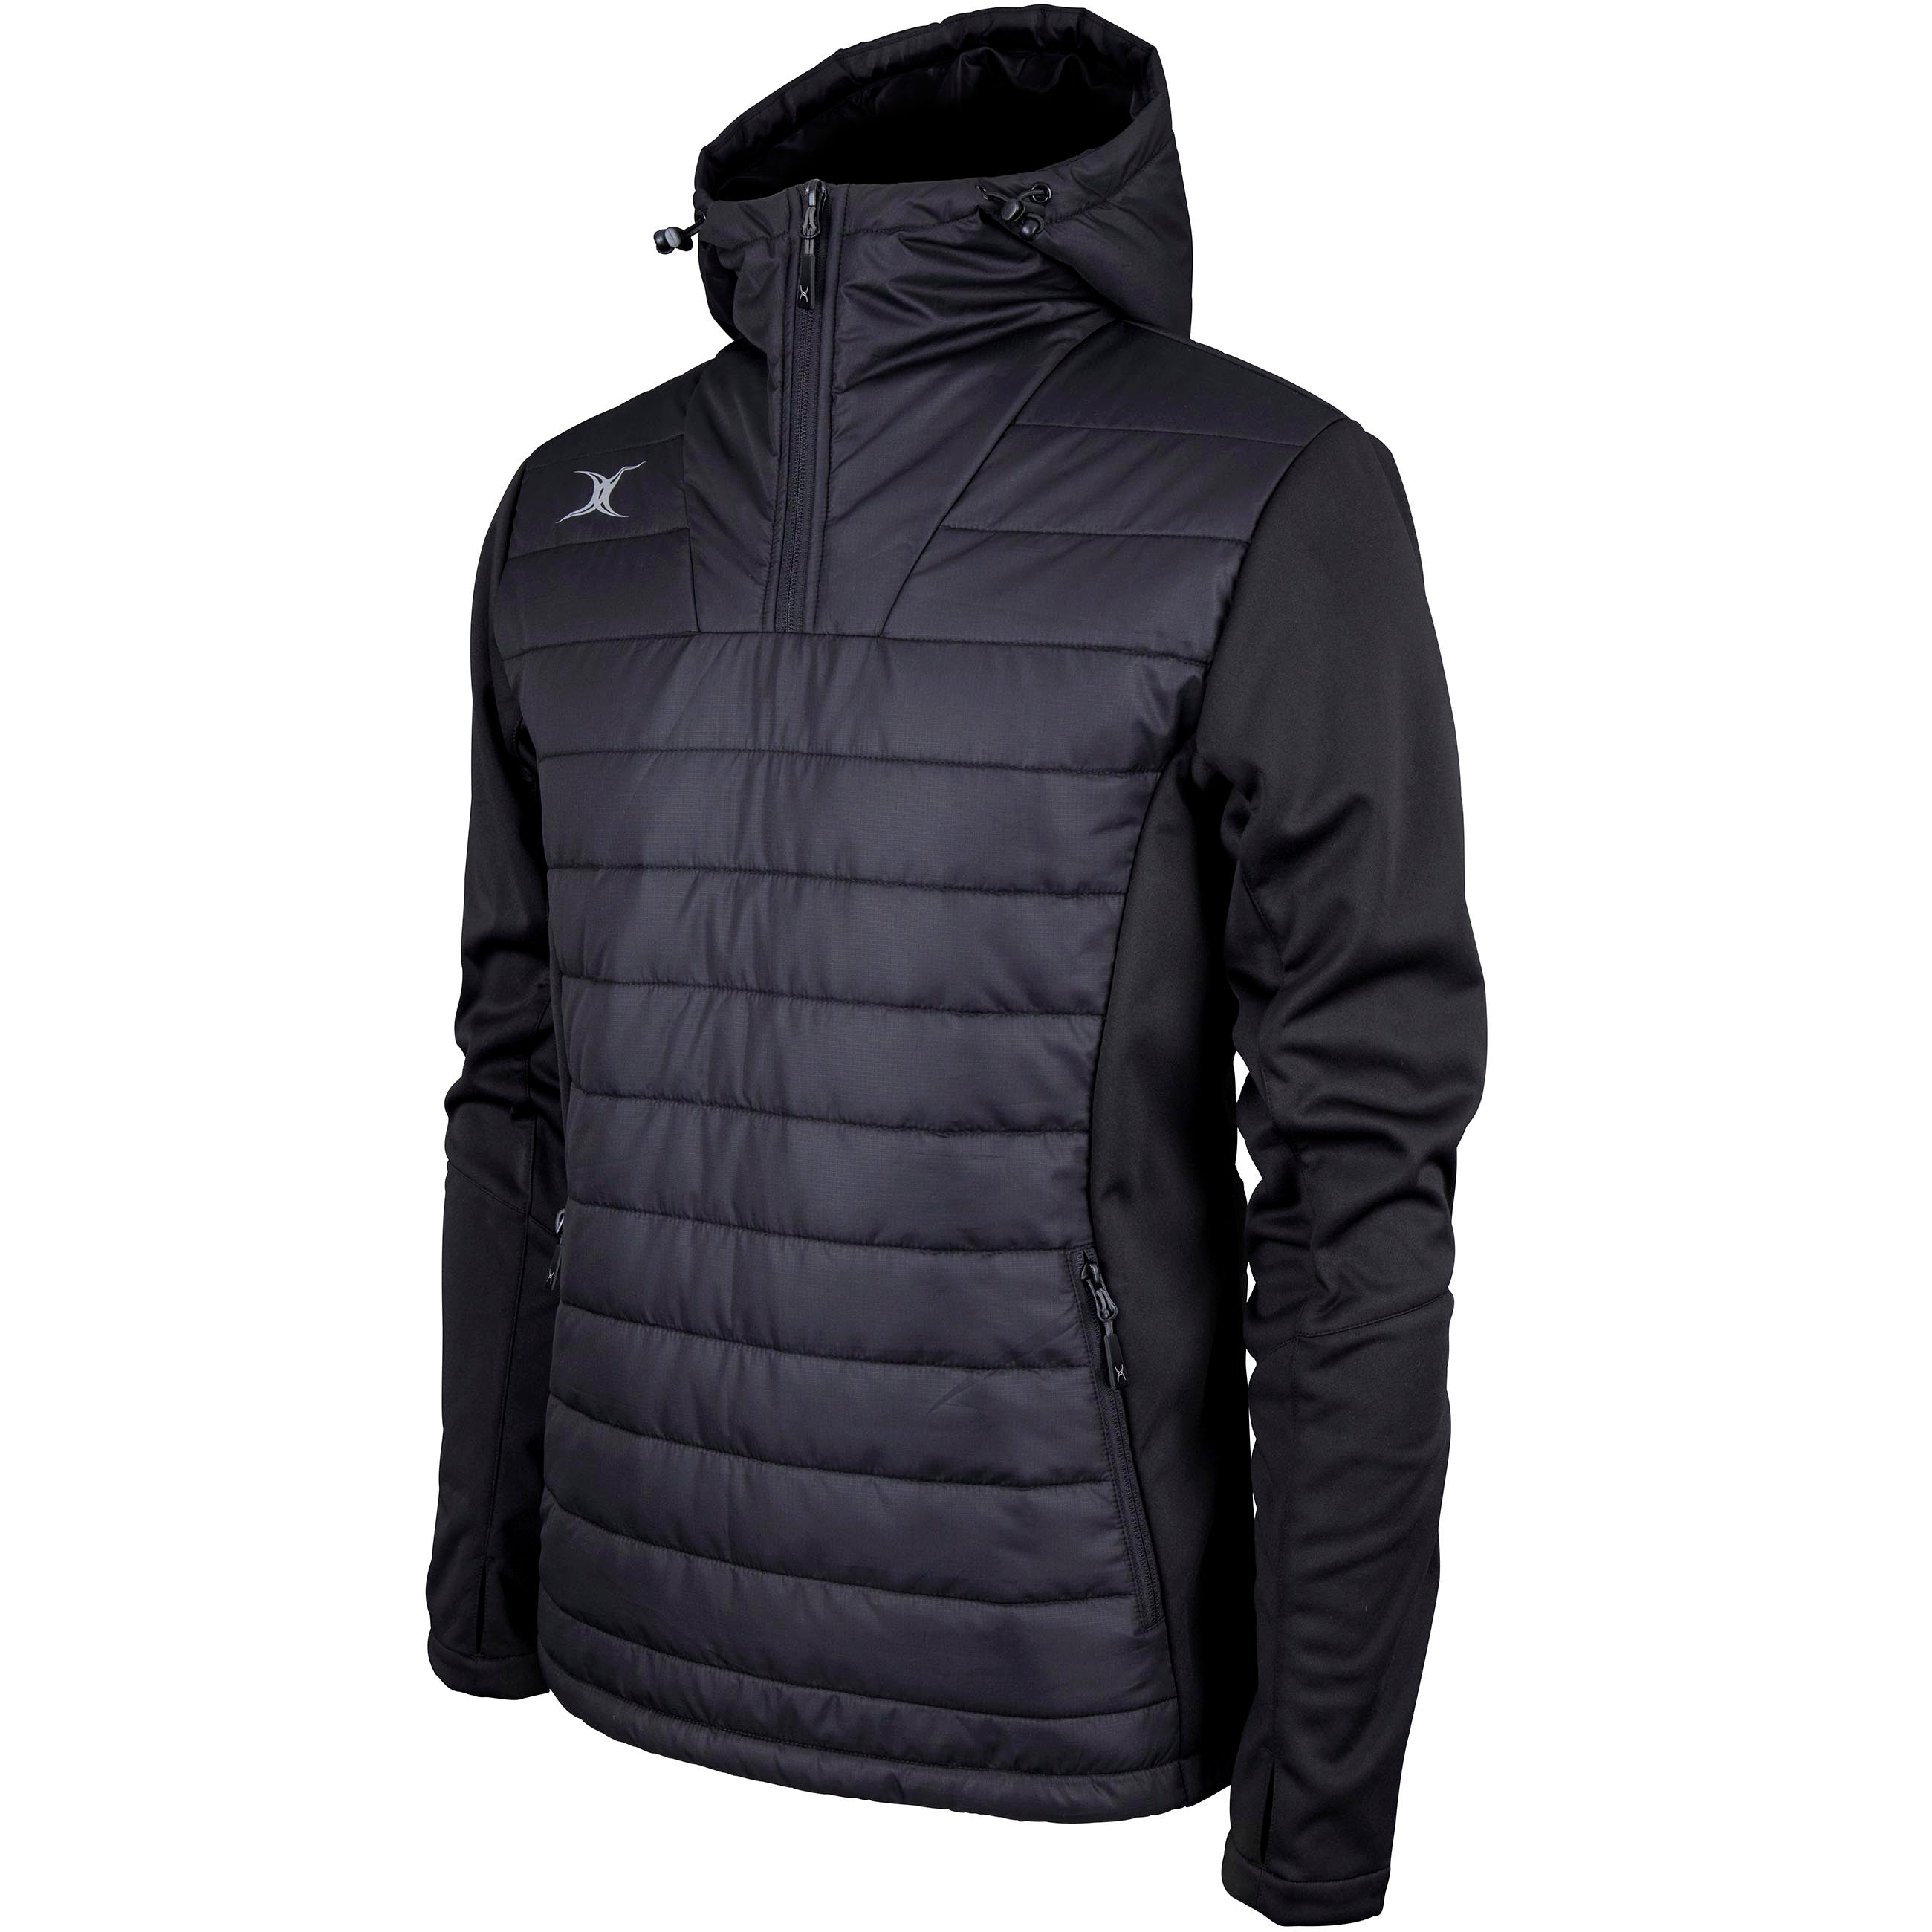 Buy Men Black Solid Full Sleeves Casual Jacket Online - 805561